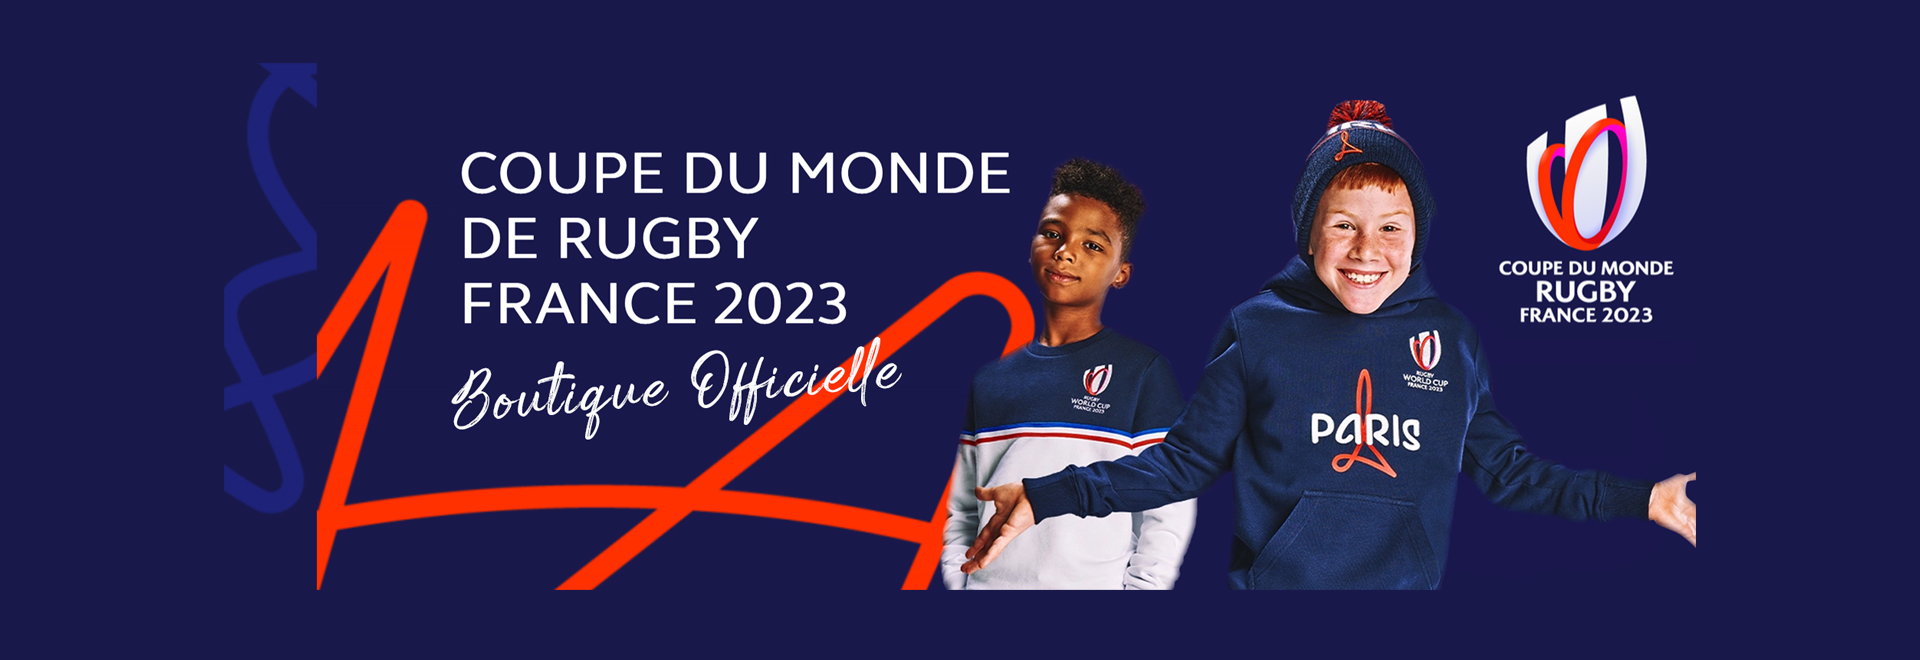 Rugby coupe du monde france 2023 boutique officielle